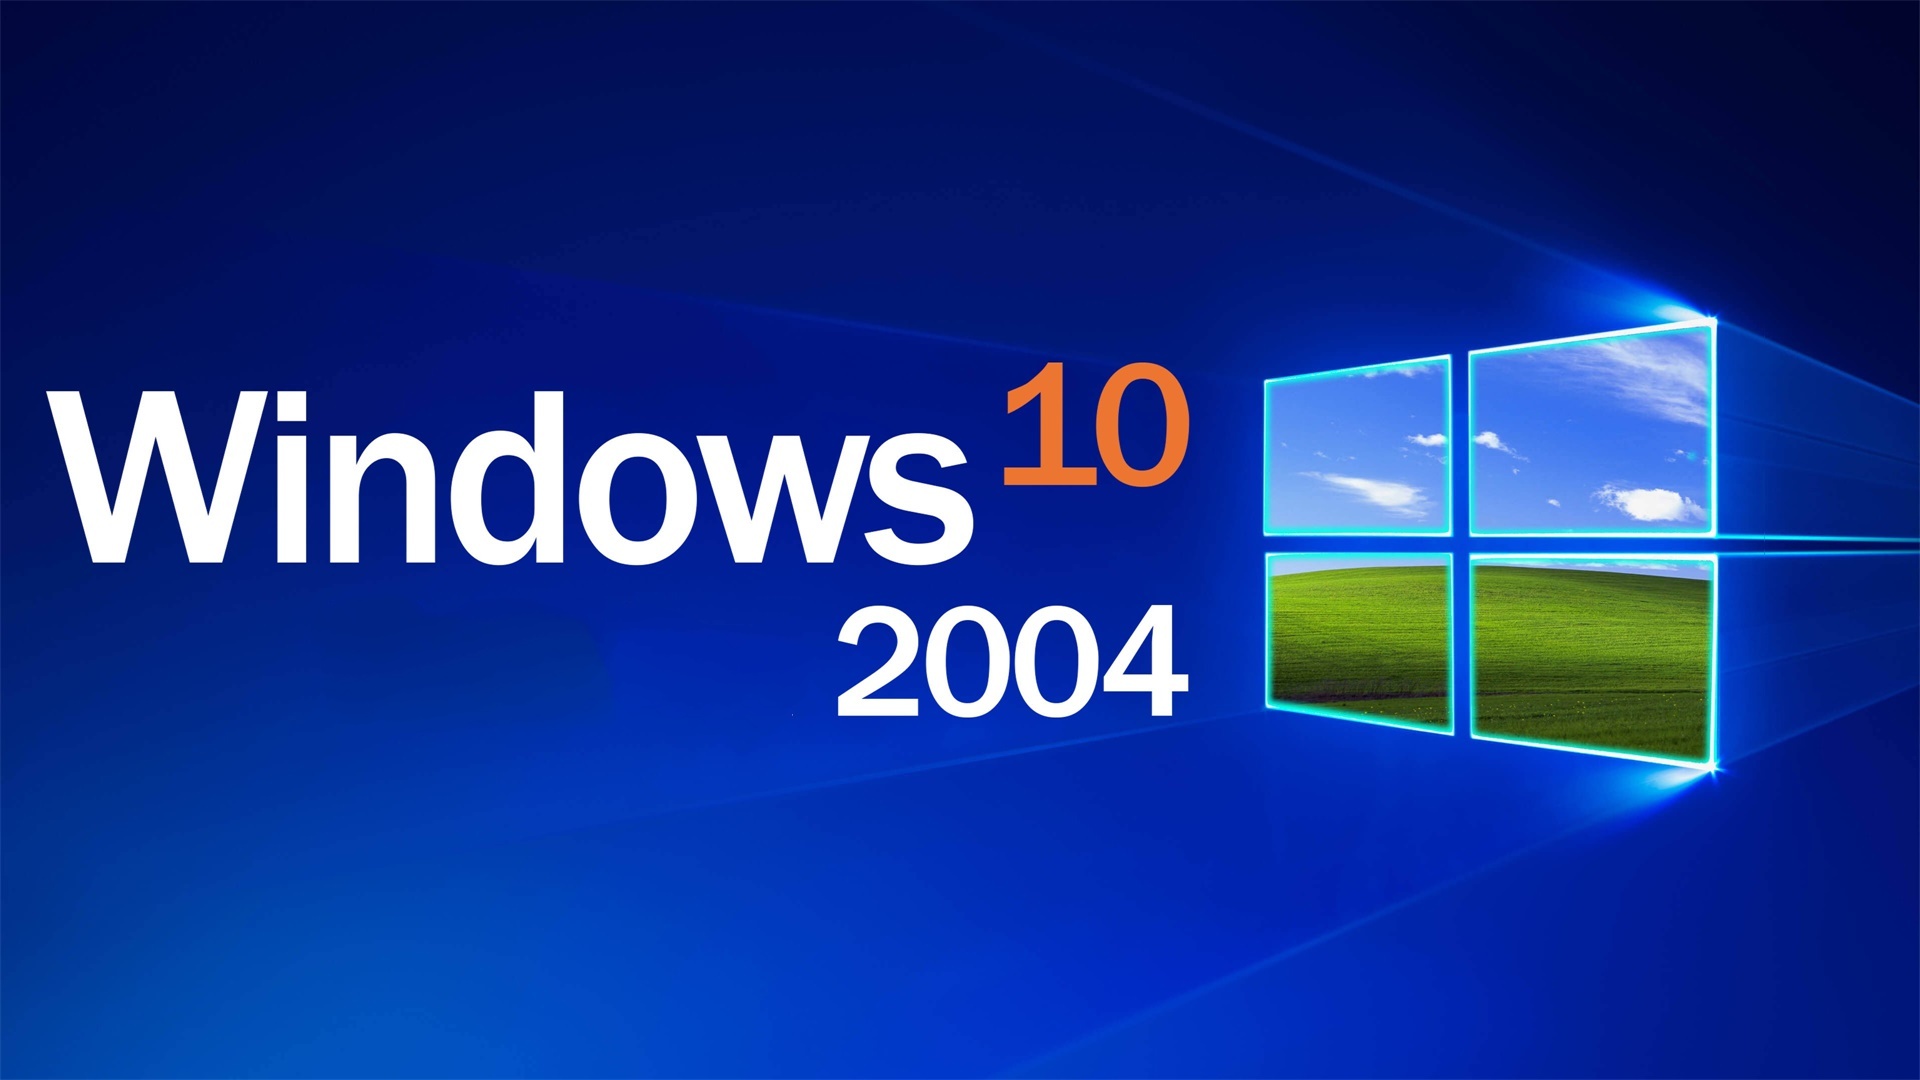 一文读懂微软Win10 2004操作系统中提供的所有新功能